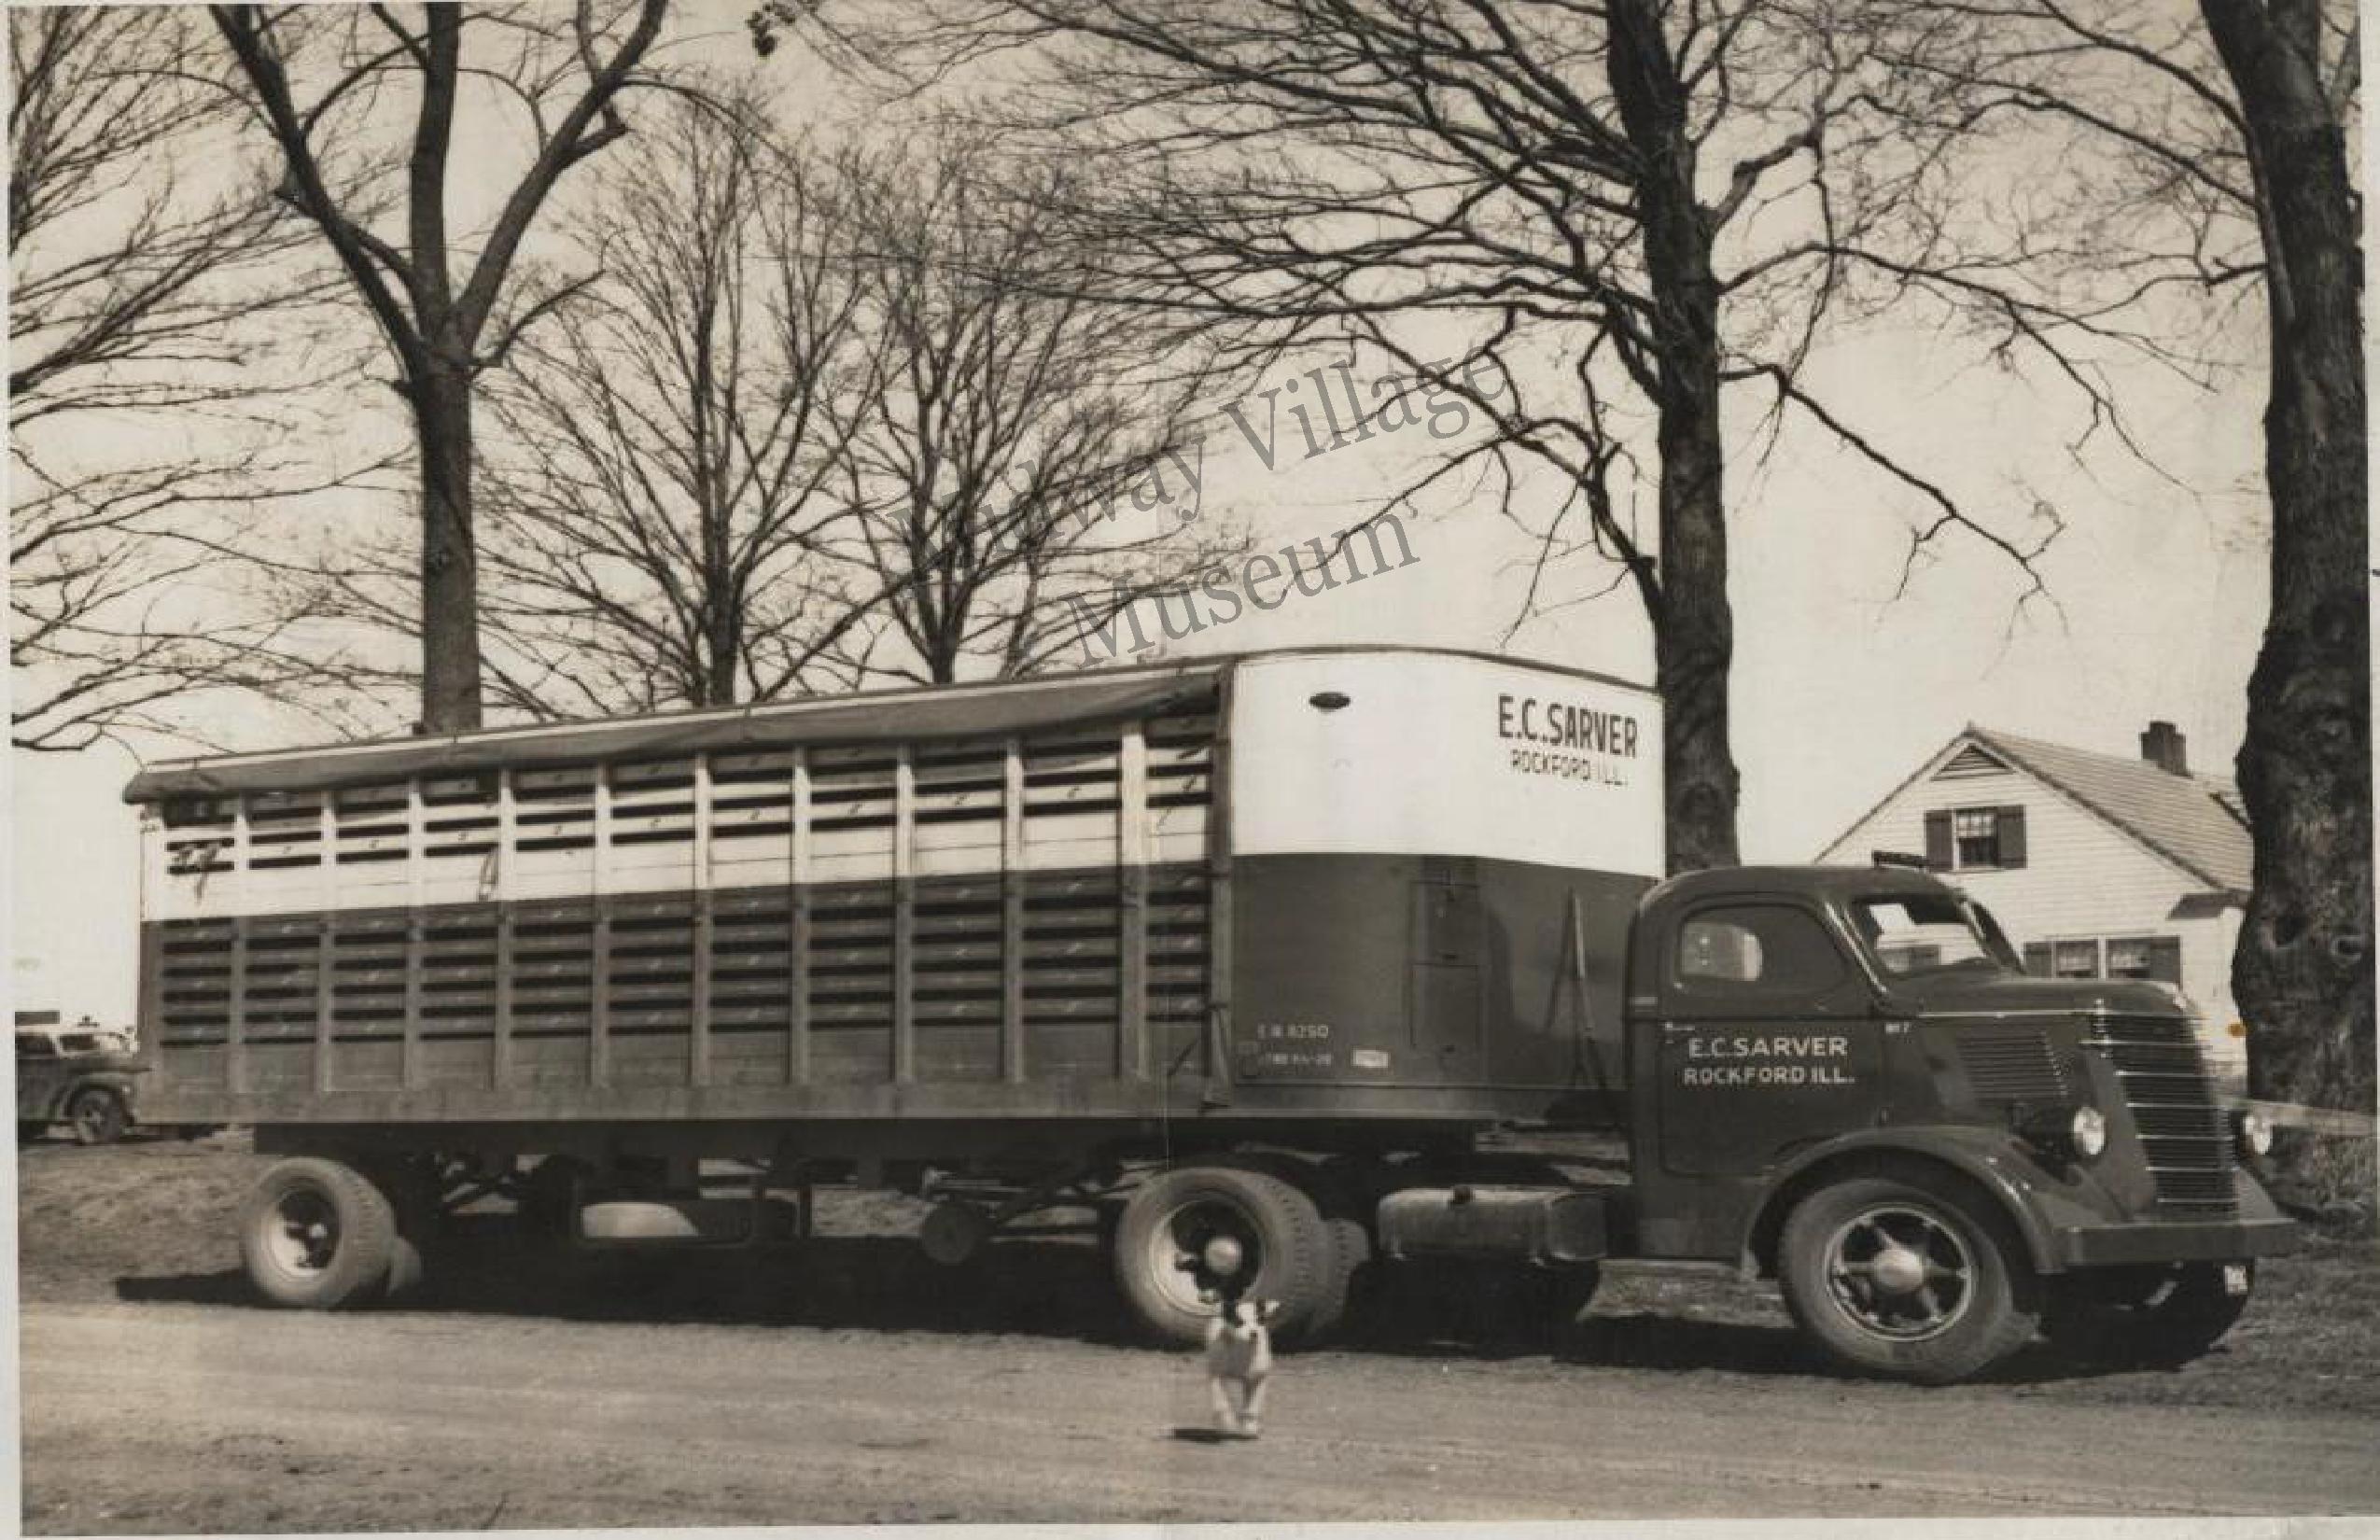 One of Sons livestock trucks